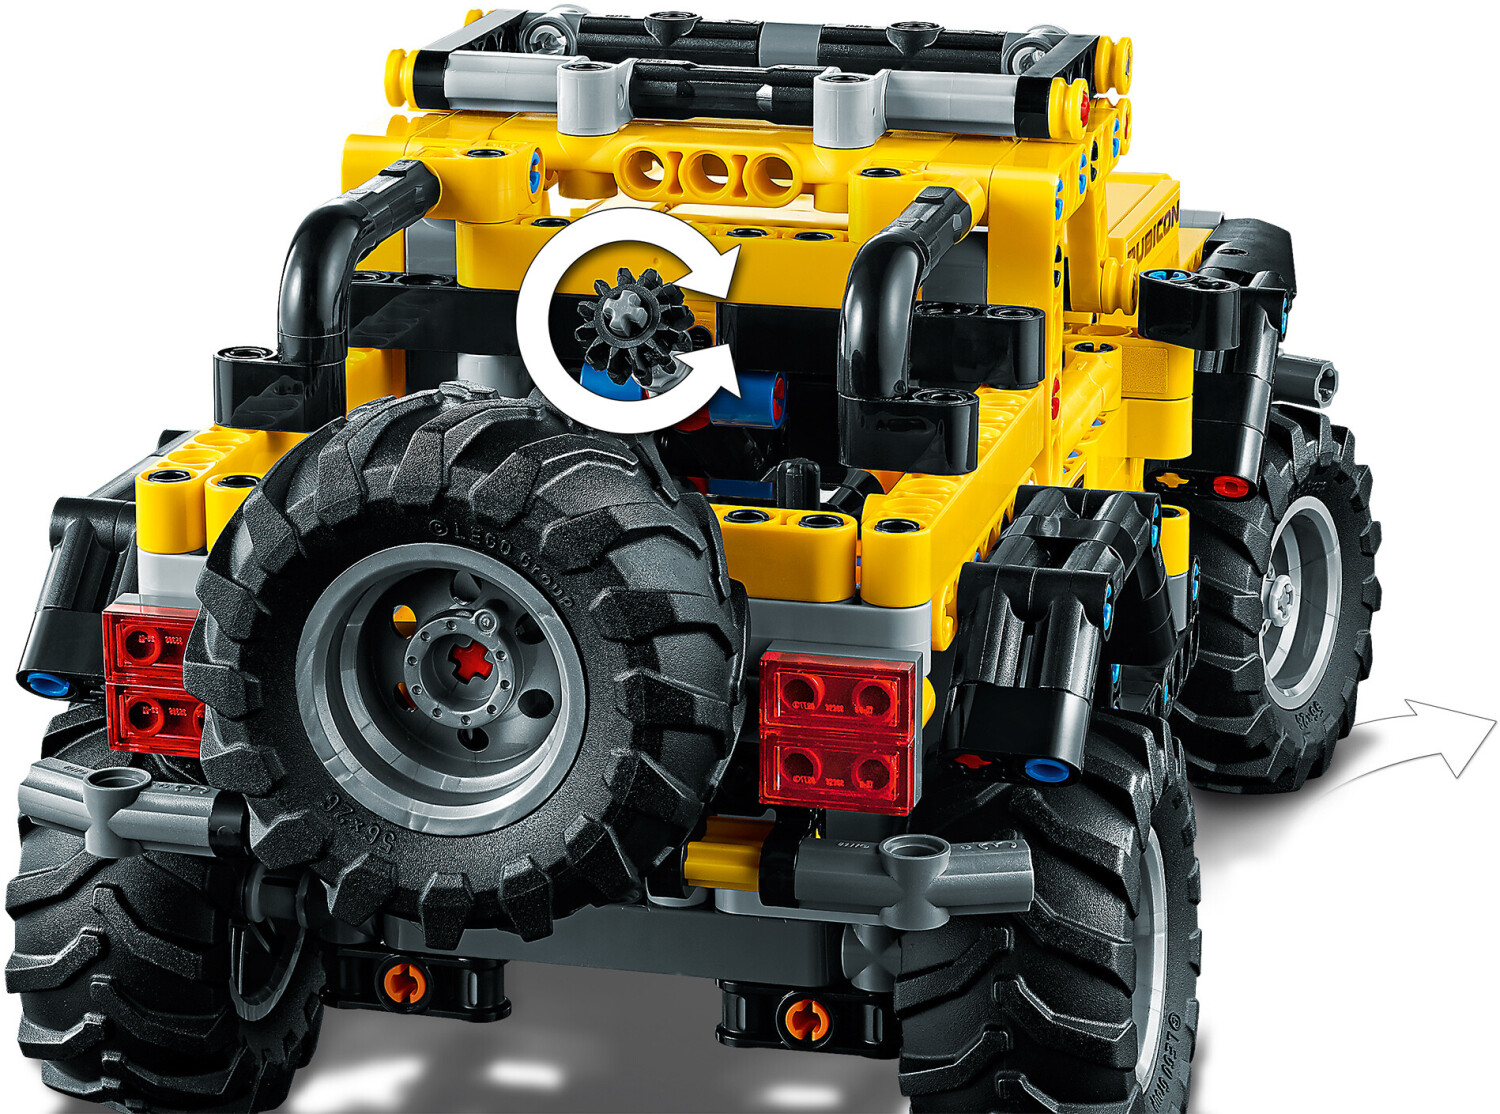 Ein lego-jeep mit farbenfrohem design auf der vorderseite